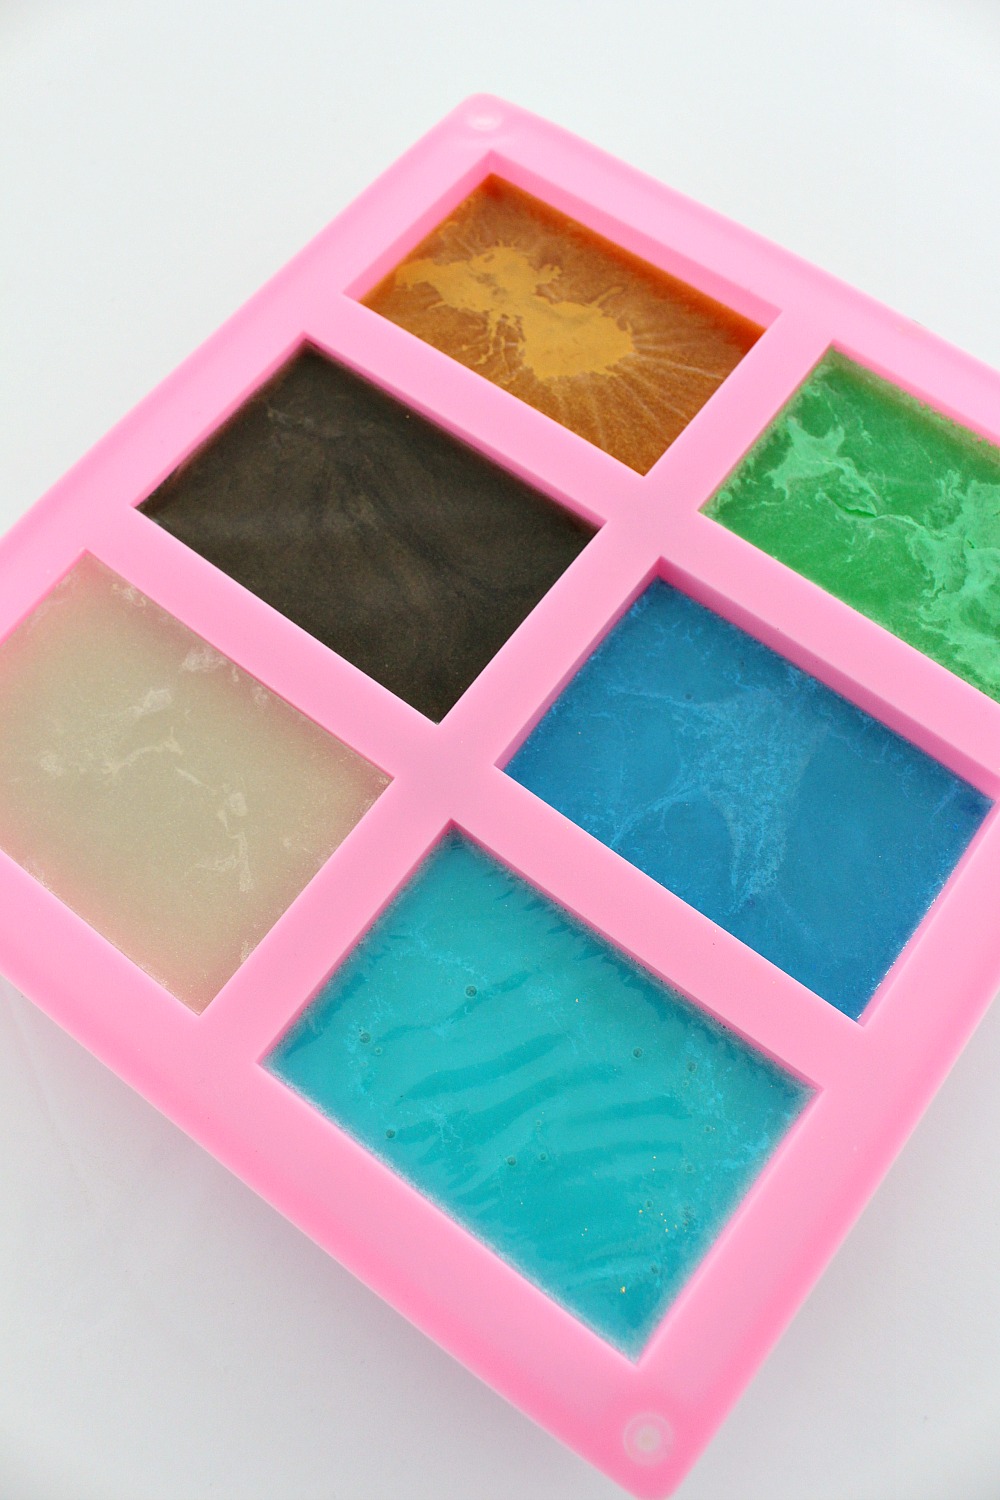 DIY Gem + Mineral Shaped Soap | Make Your Own Melt + Pour Soap Rocks